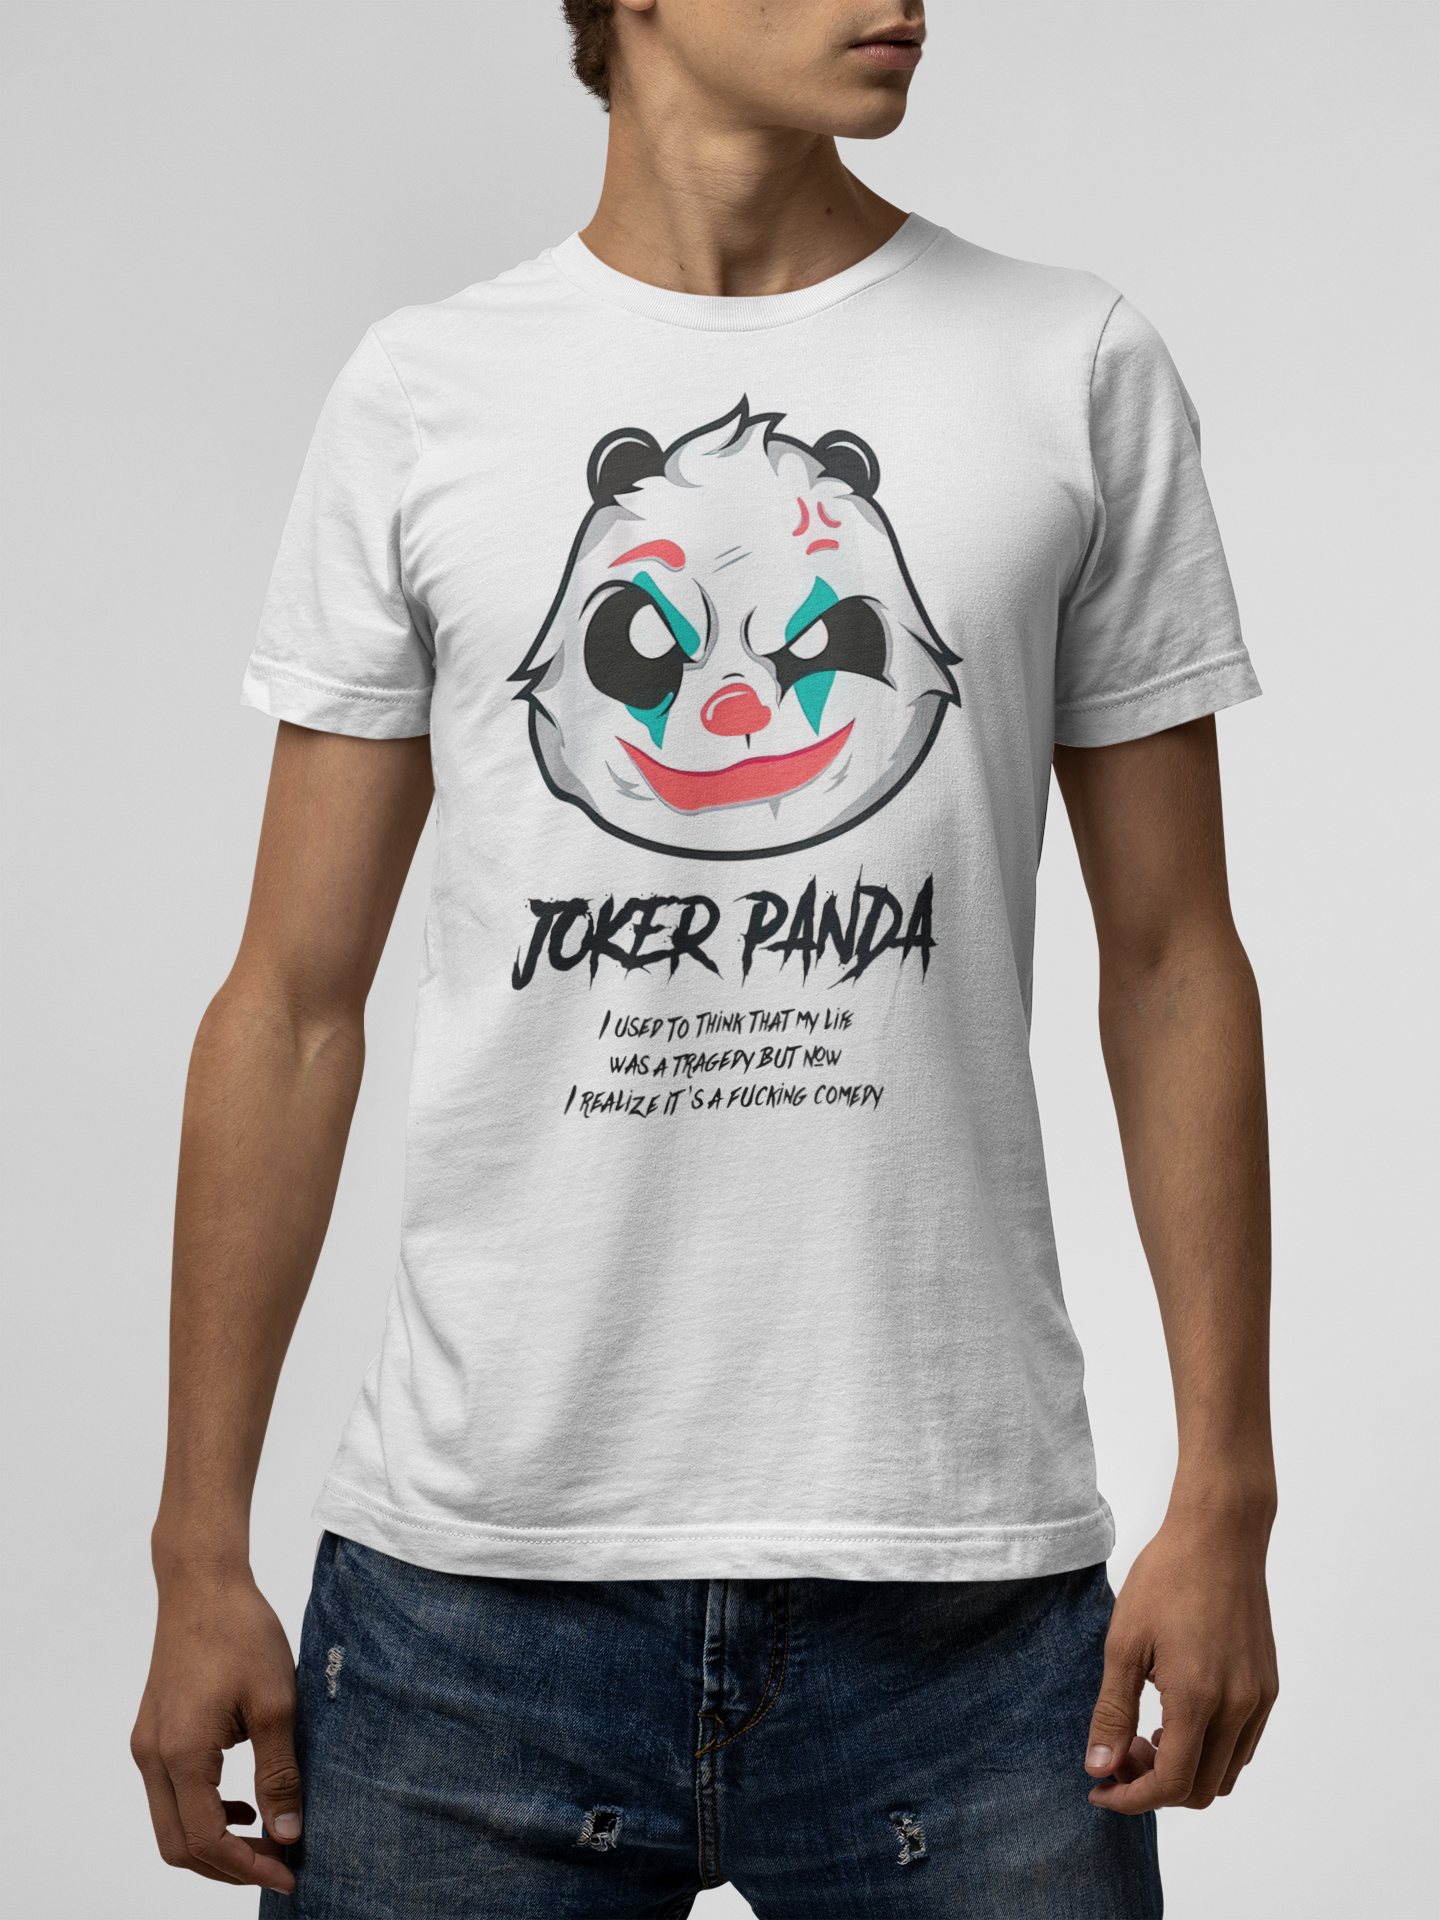 Joker Panda T-Shirt For Men